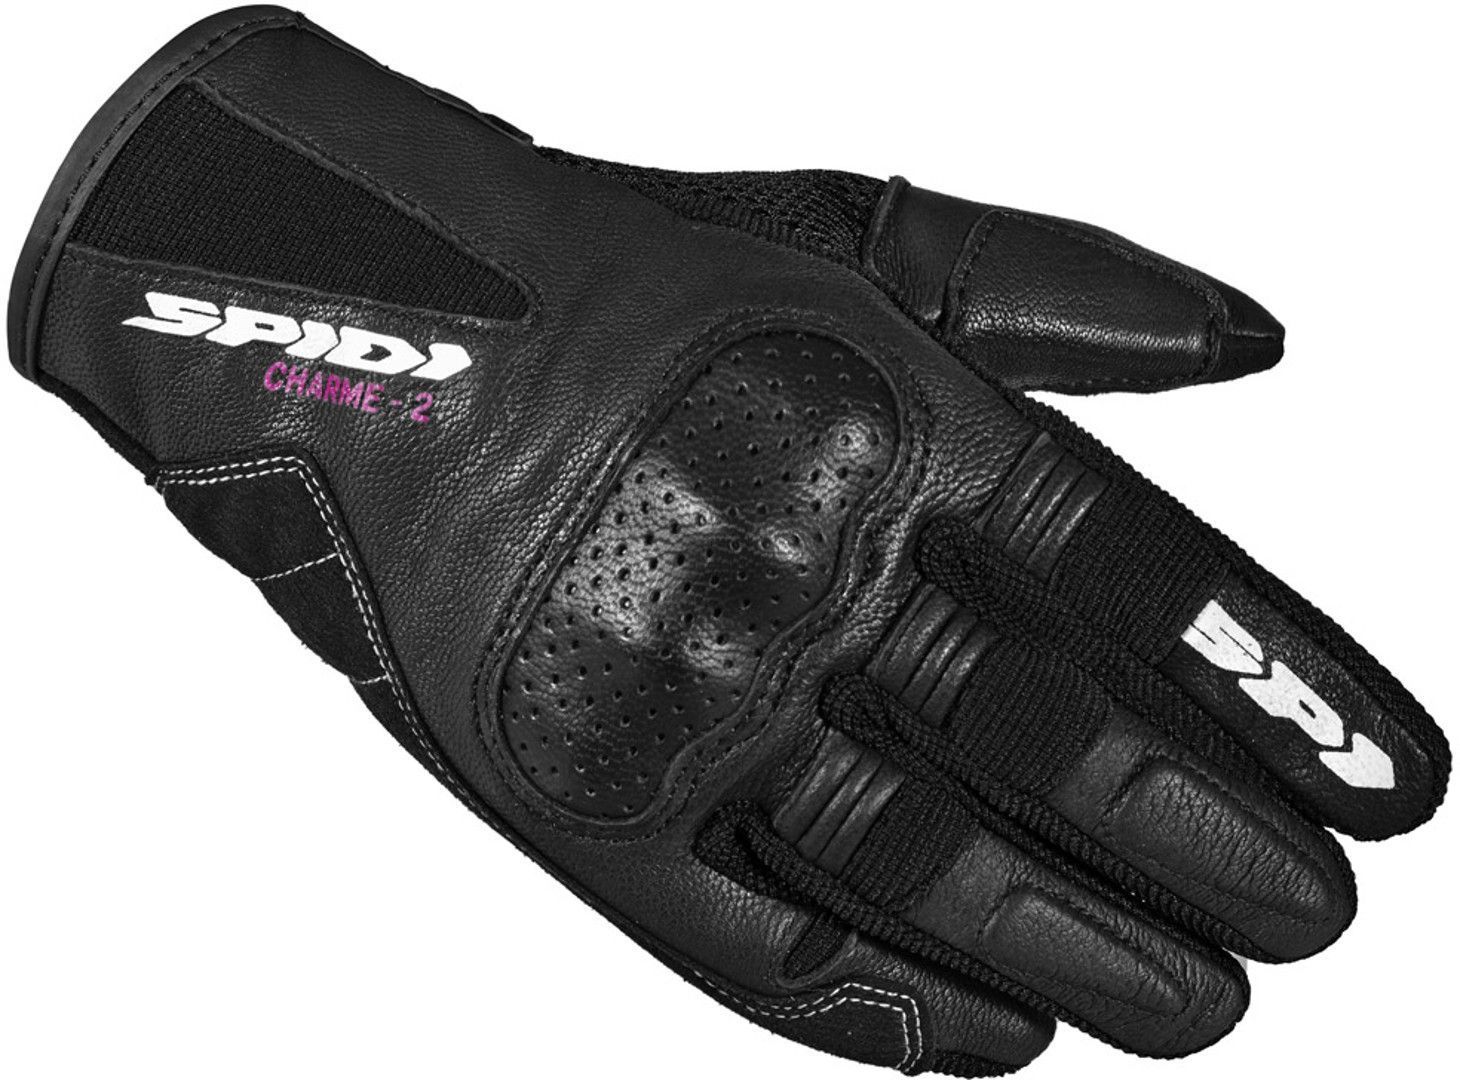 Spidi Charme 2 Ladies Motorcycle Gloves, black-white, Size S for Women, black-white, Size S for Women